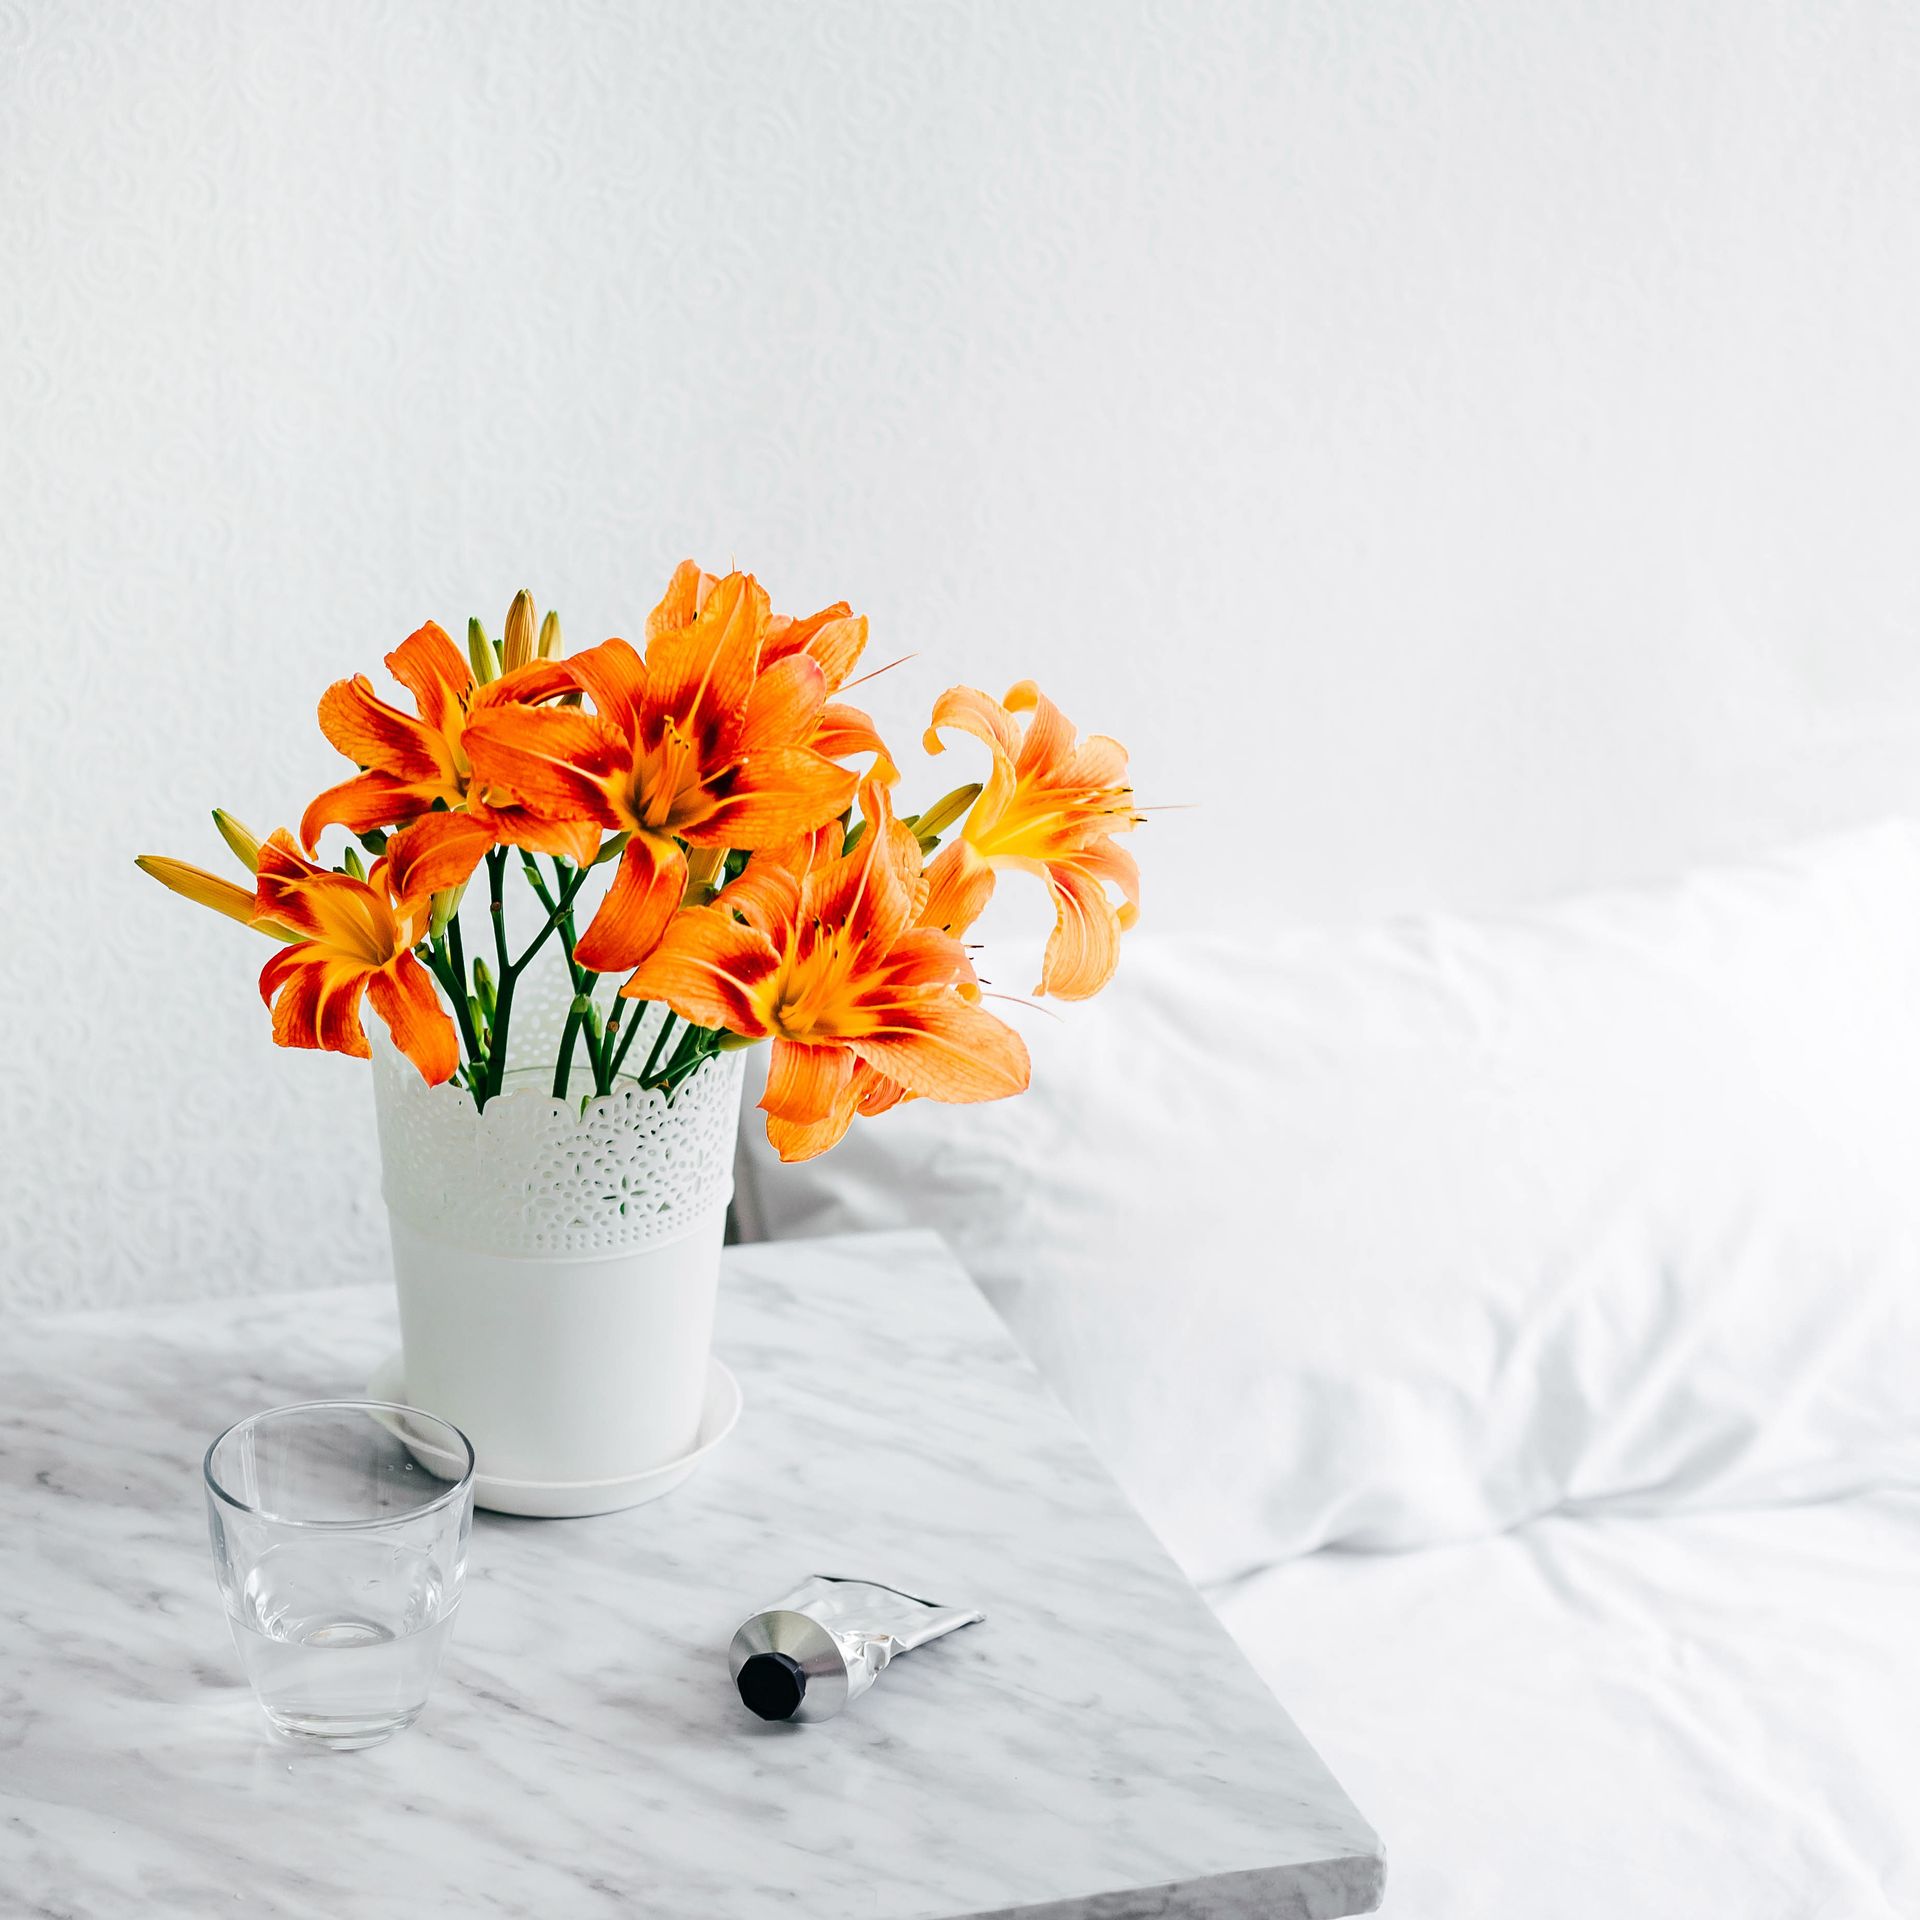 Oranje teigerlelies in een witte vaas- bloemen